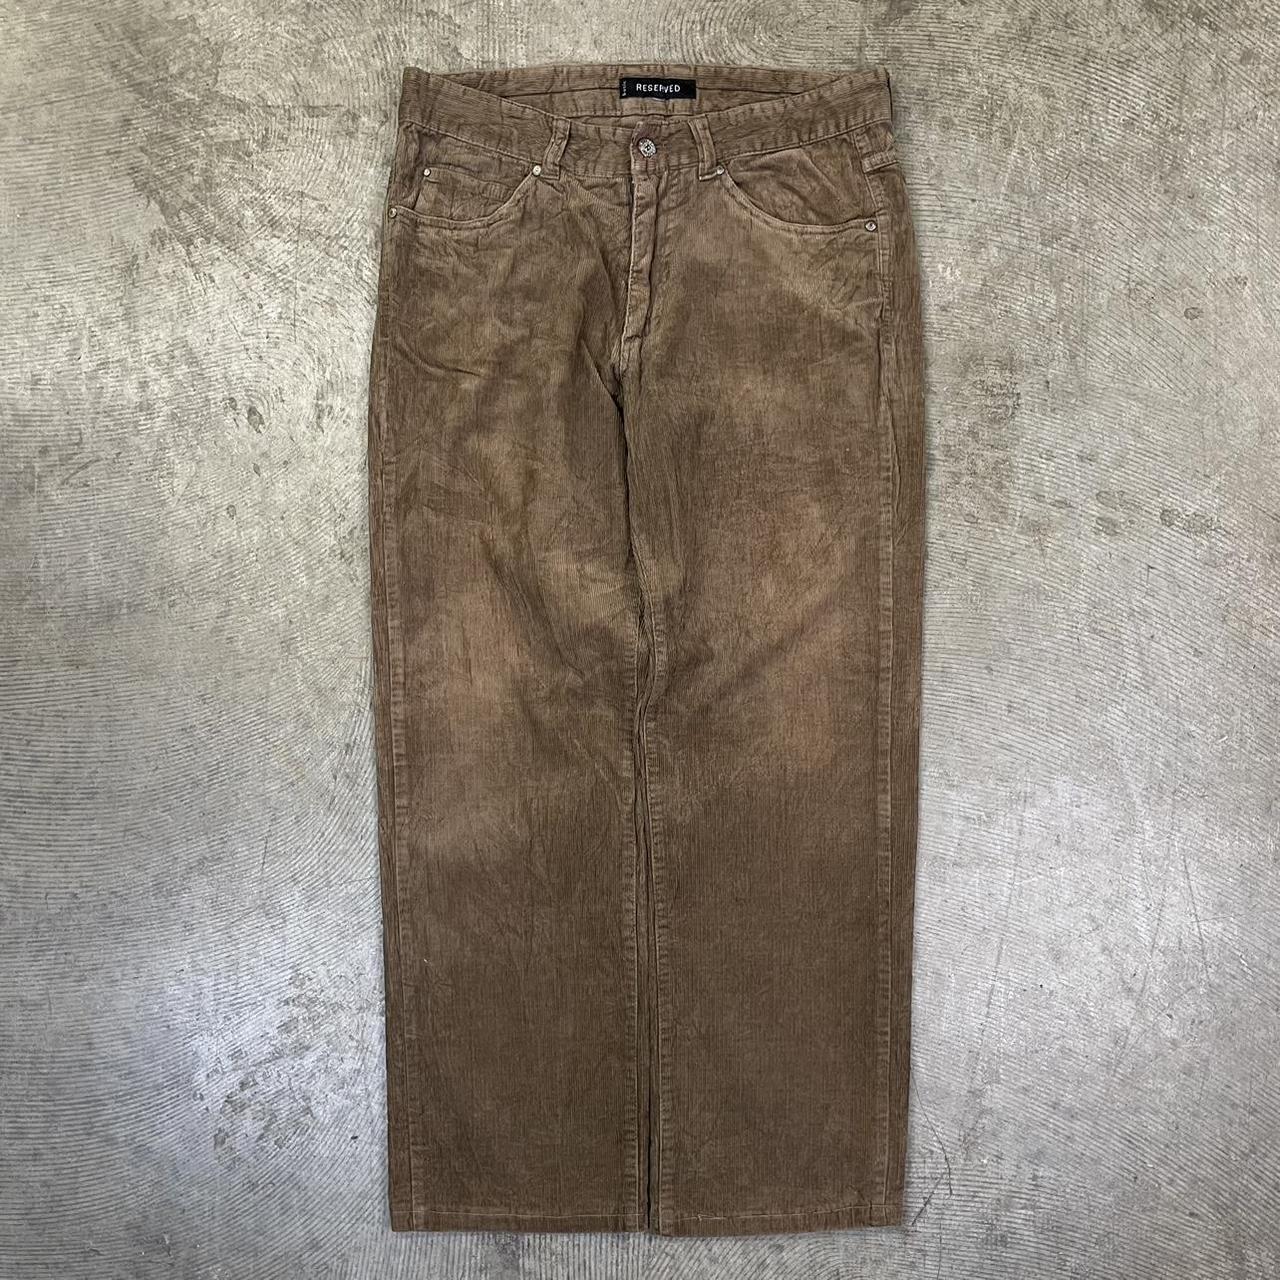 Vintage brown baggy cord pants 90s super jumbo... - Depop